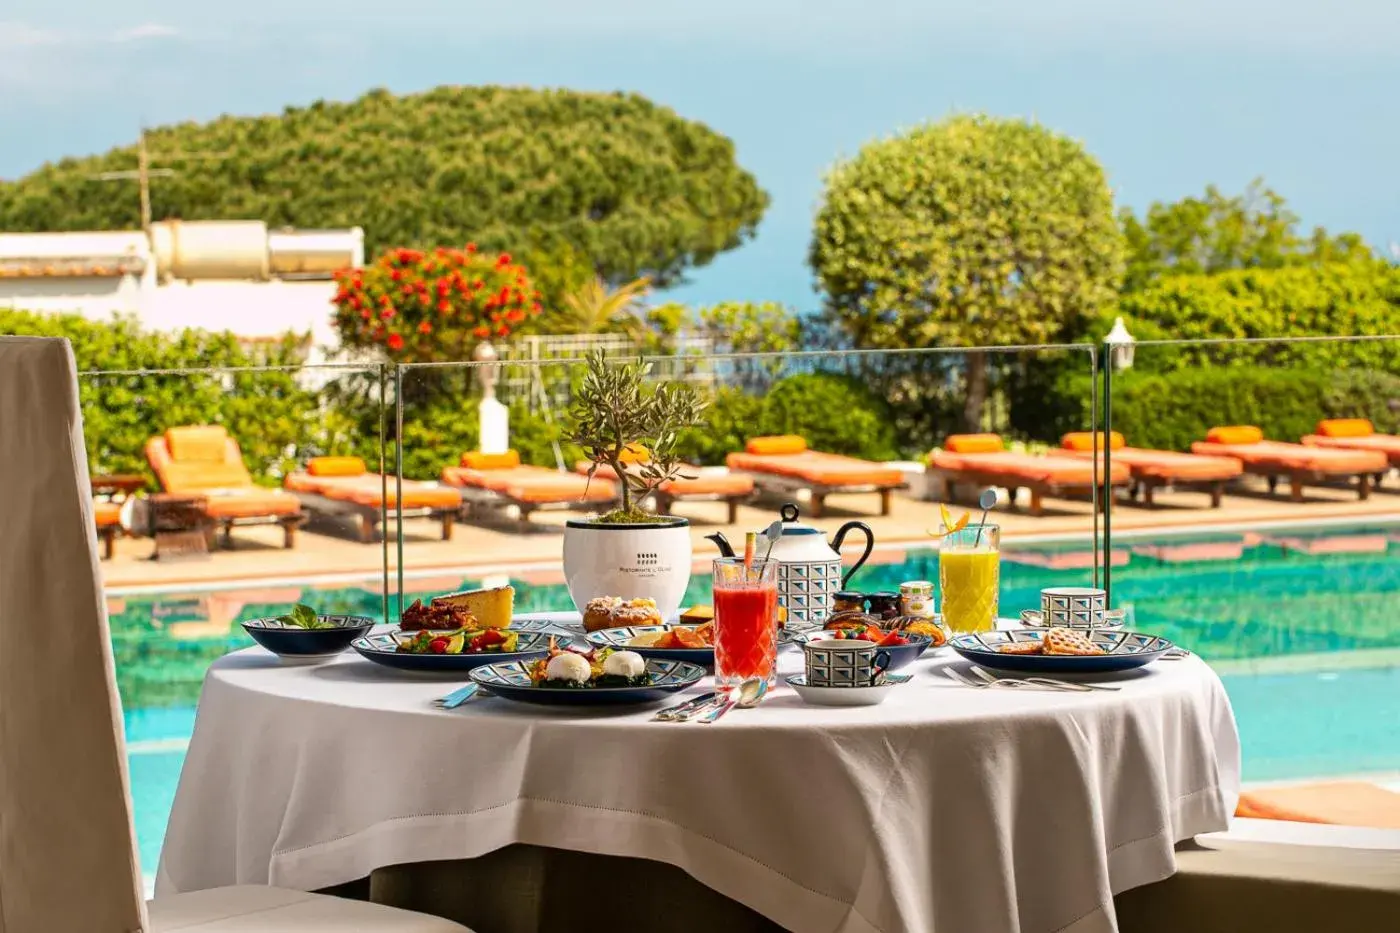 Dining area in Capri Palace Jumeirah